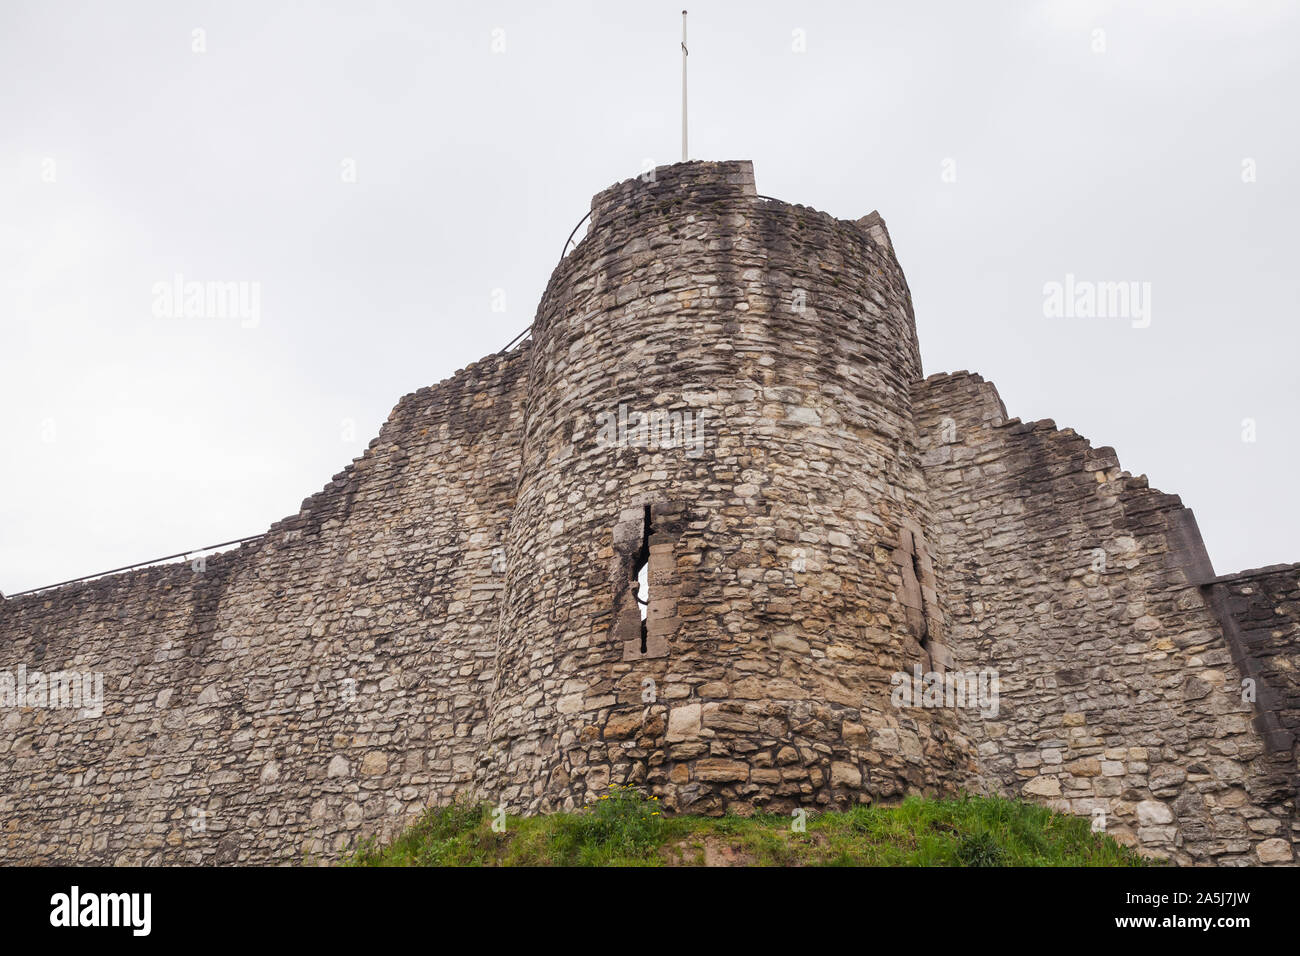 Las murallas de la ciudad de Southampton, es una secuencia de estructuras defensivas construidas alrededor de la ciudad en el sur de Inglaterra. La torre de piedra en ruinas Foto de stock